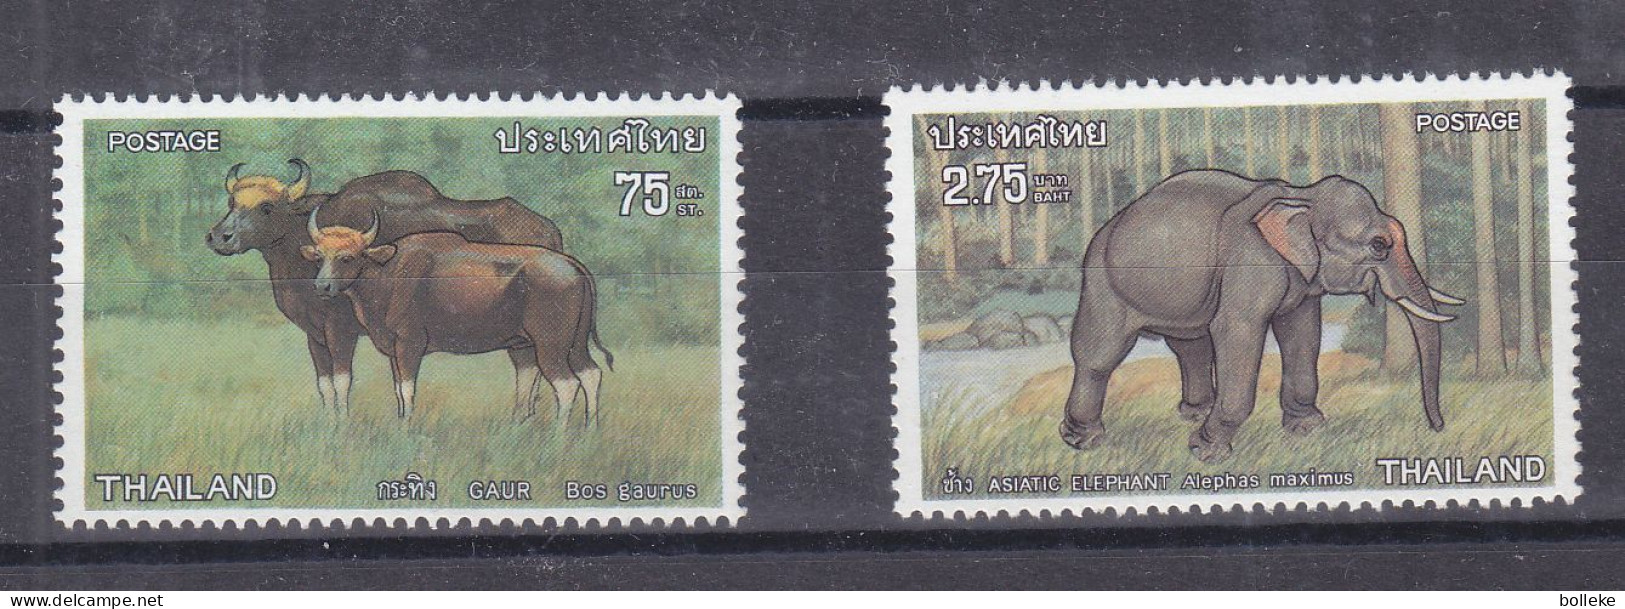 éléphants - Buffles - Thailande - Yvert 718 / 19 ** - Valeur 9 Euros - - Elefantes